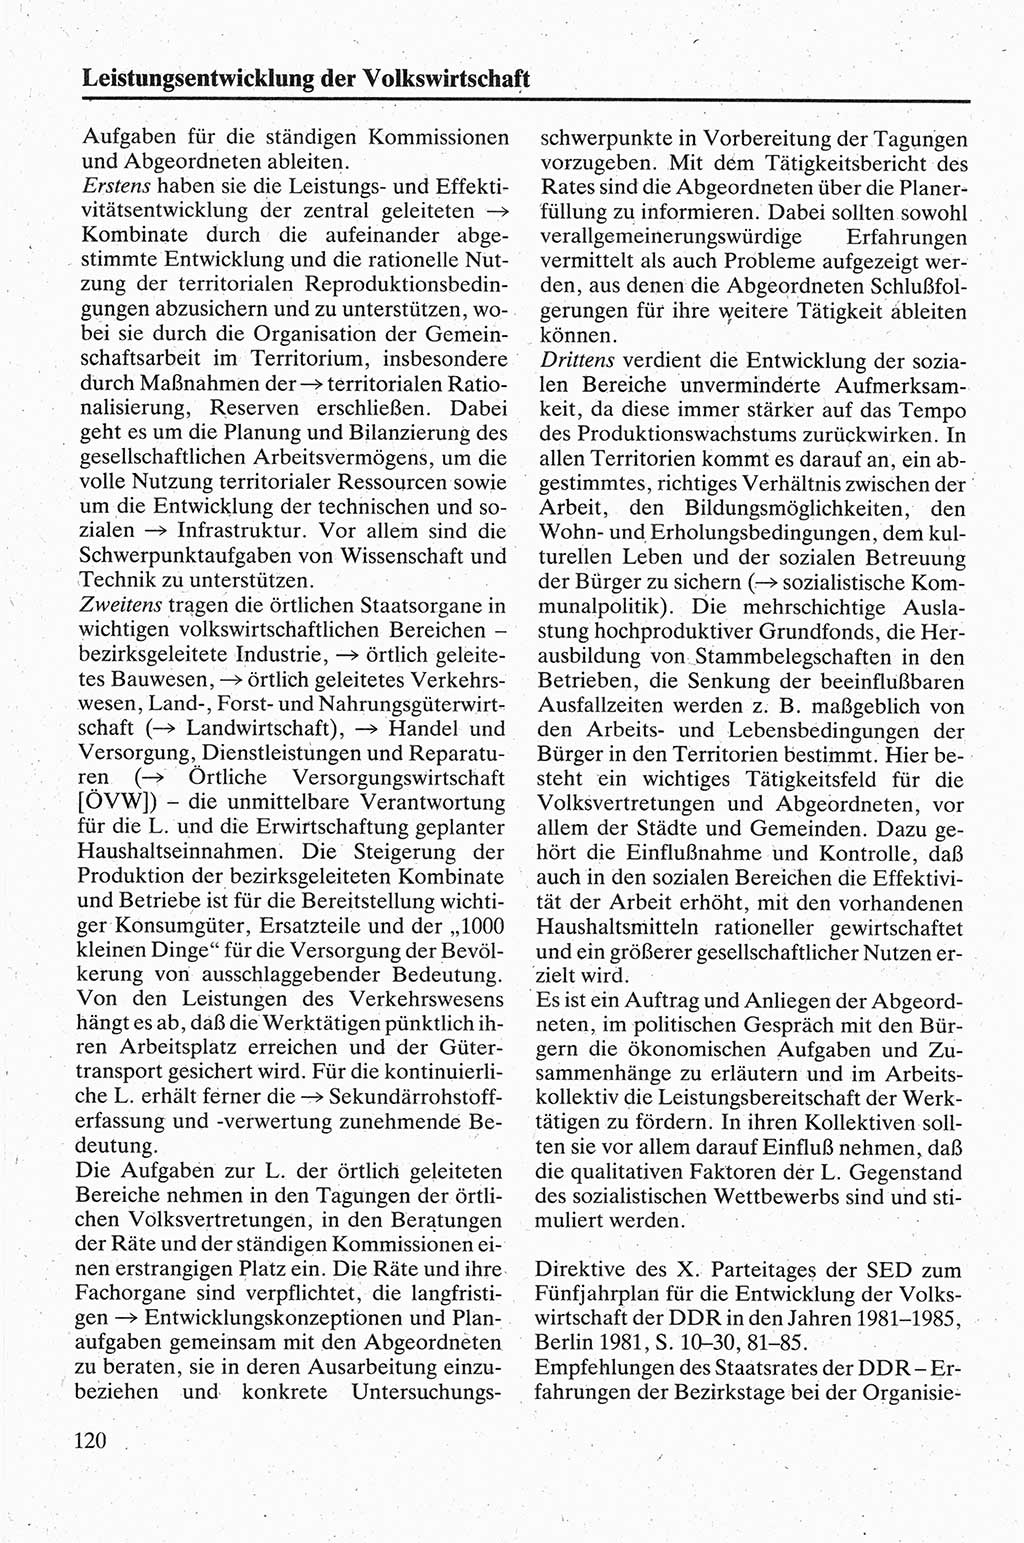 Handbuch für den Abgeordneten [Deutsche Demokratische Republik (DDR)] 1984, Seite 120 (Hb. Abg. DDR 1984, S. 120)